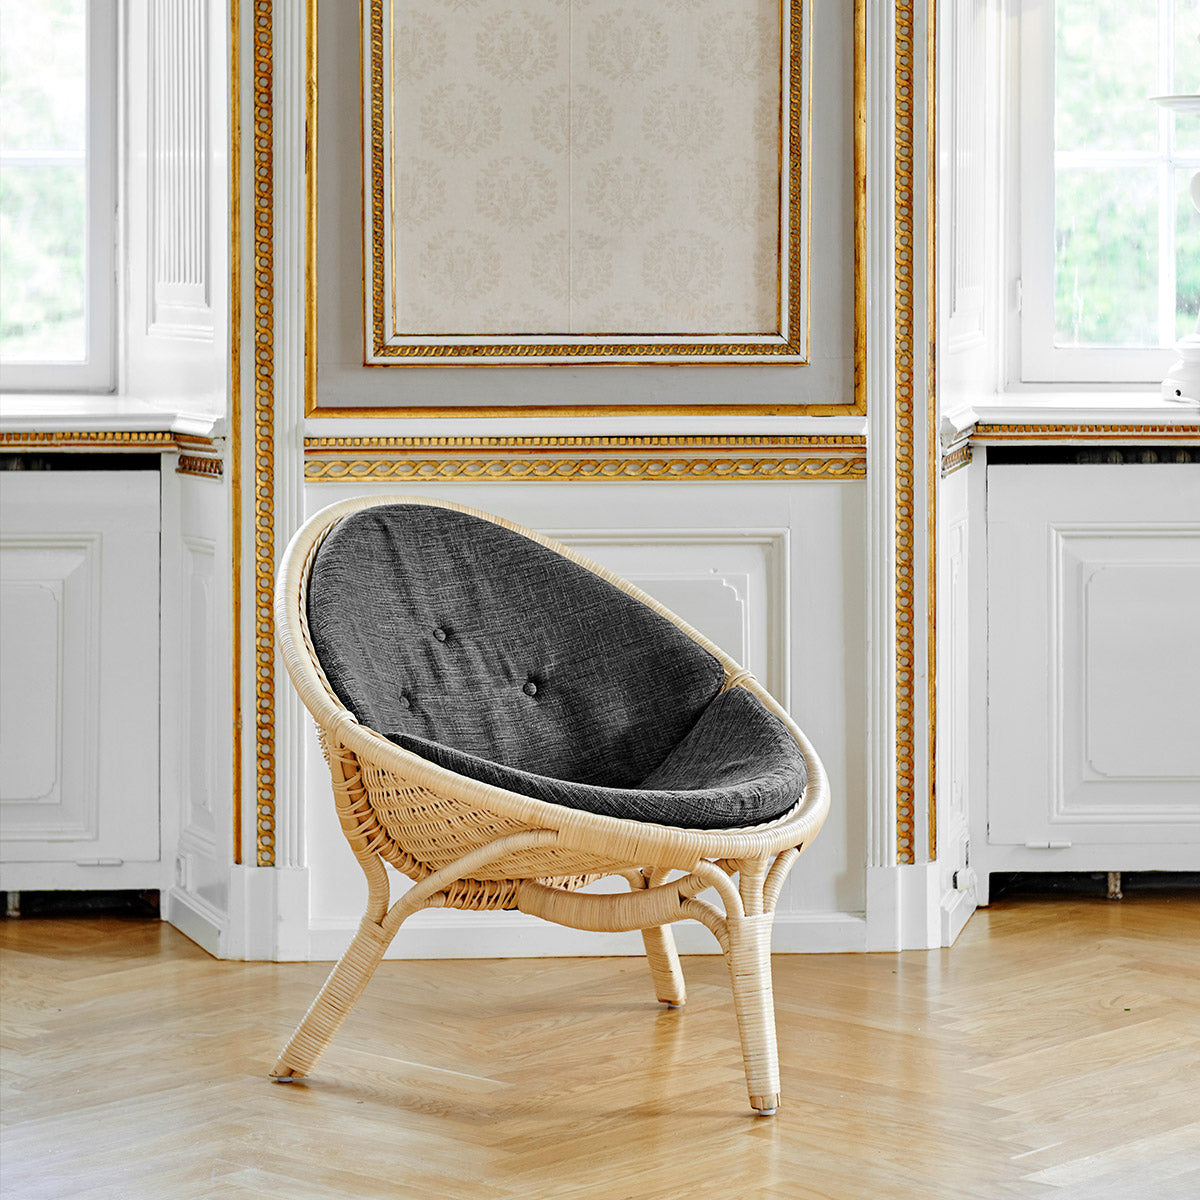 Seat cushion | Rana Lounge Chair